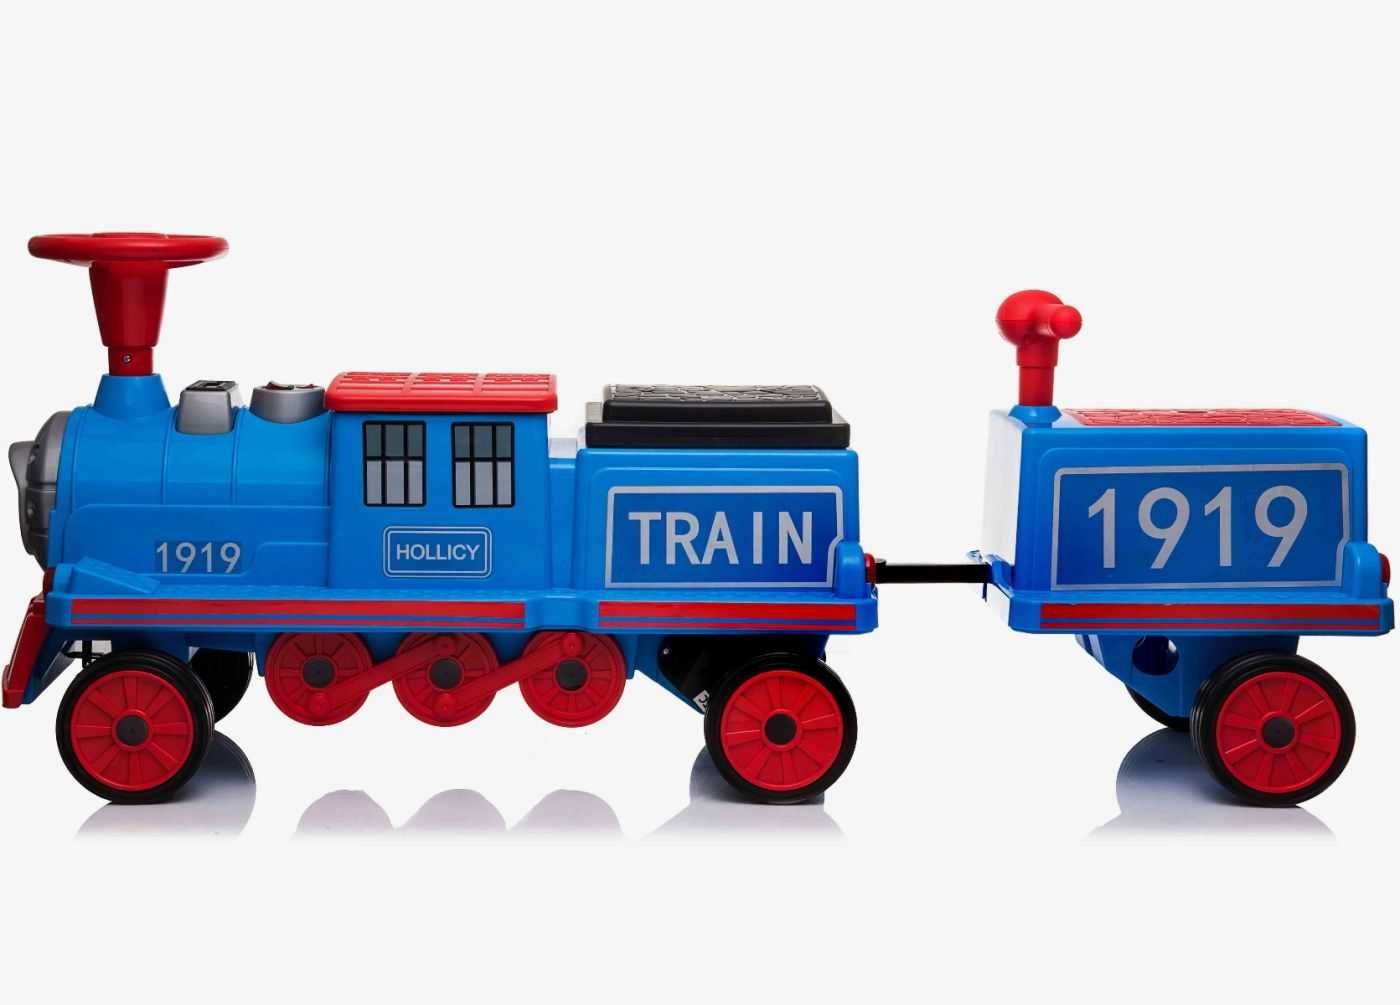 Trenulet electric cu vagon SX1919B 180W 4x4 pentru 3 copii #Blue